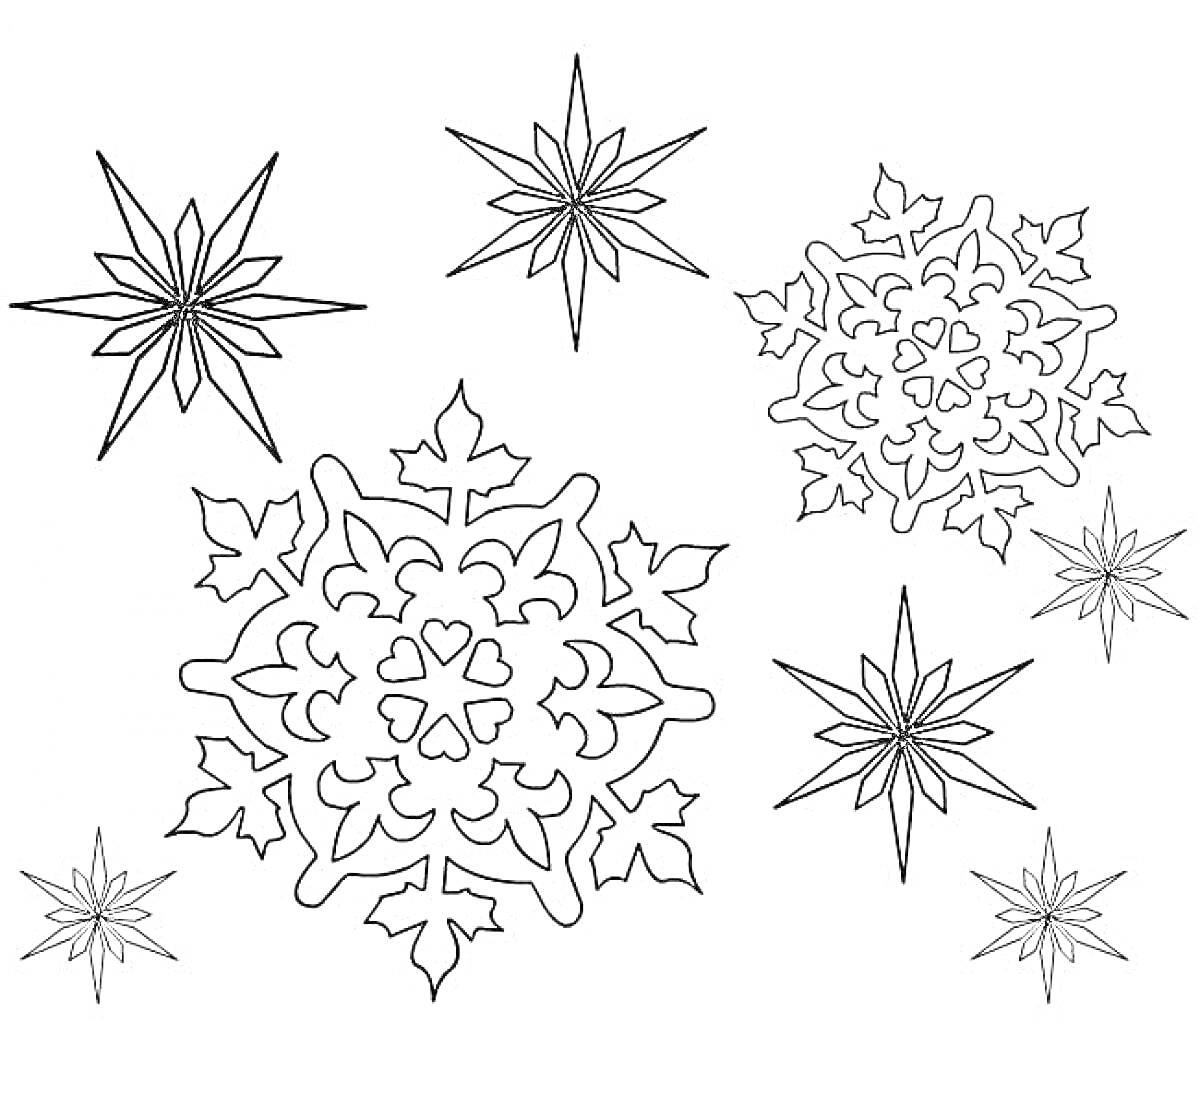 Раскраска Зимние узоры. Две большие шестиконечные снежинки с узорами и пять небольших звезд.